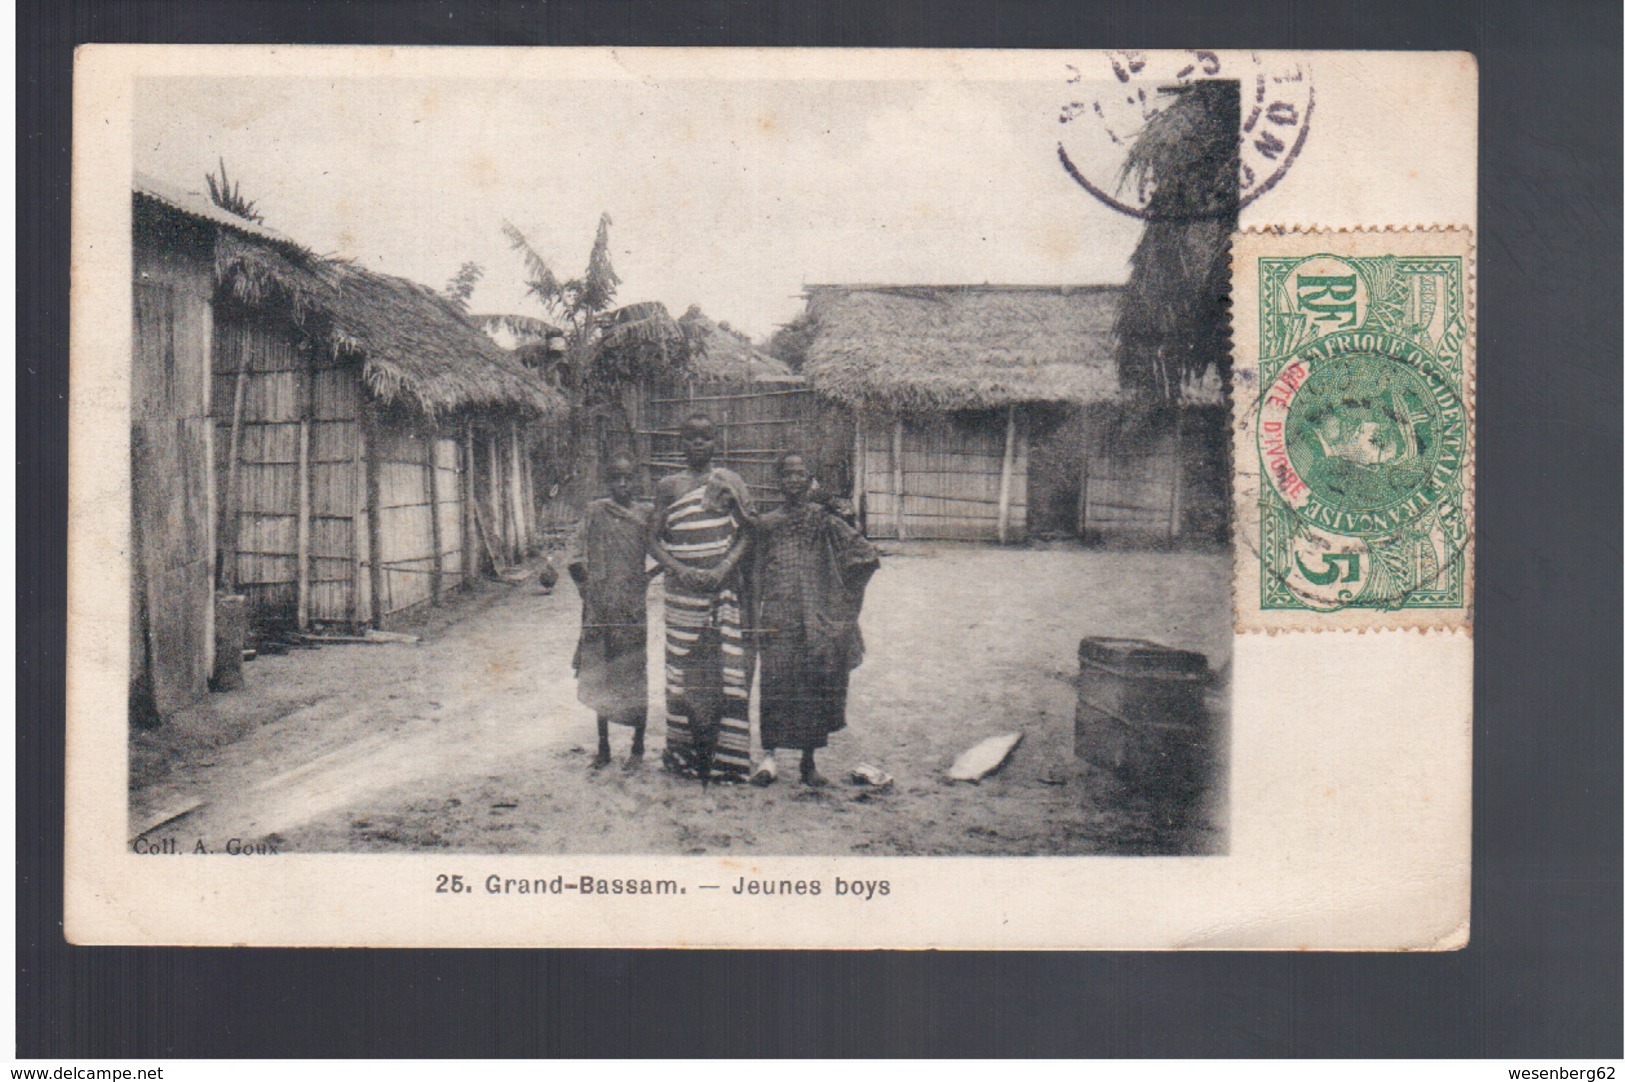 Cote D'Ivoire Grand- Bassam - Jeunes Boys 1907 Old Postcard - Côte-d'Ivoire